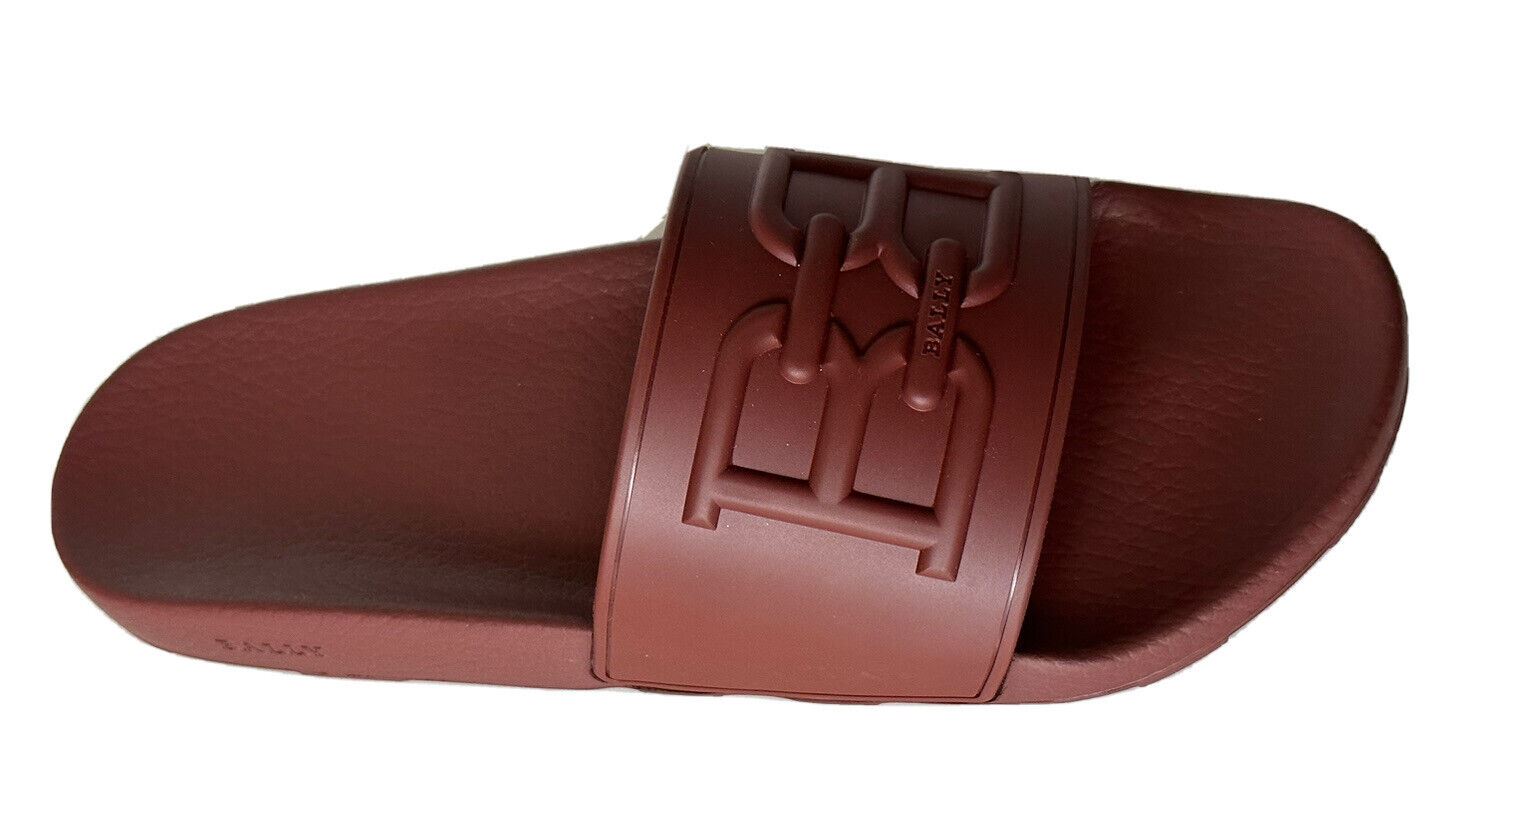 Мужские сандалии NIB Bally Scotty с красным логотипом, резиновые шлепанцы Heritage 14 США 6300475 IT 